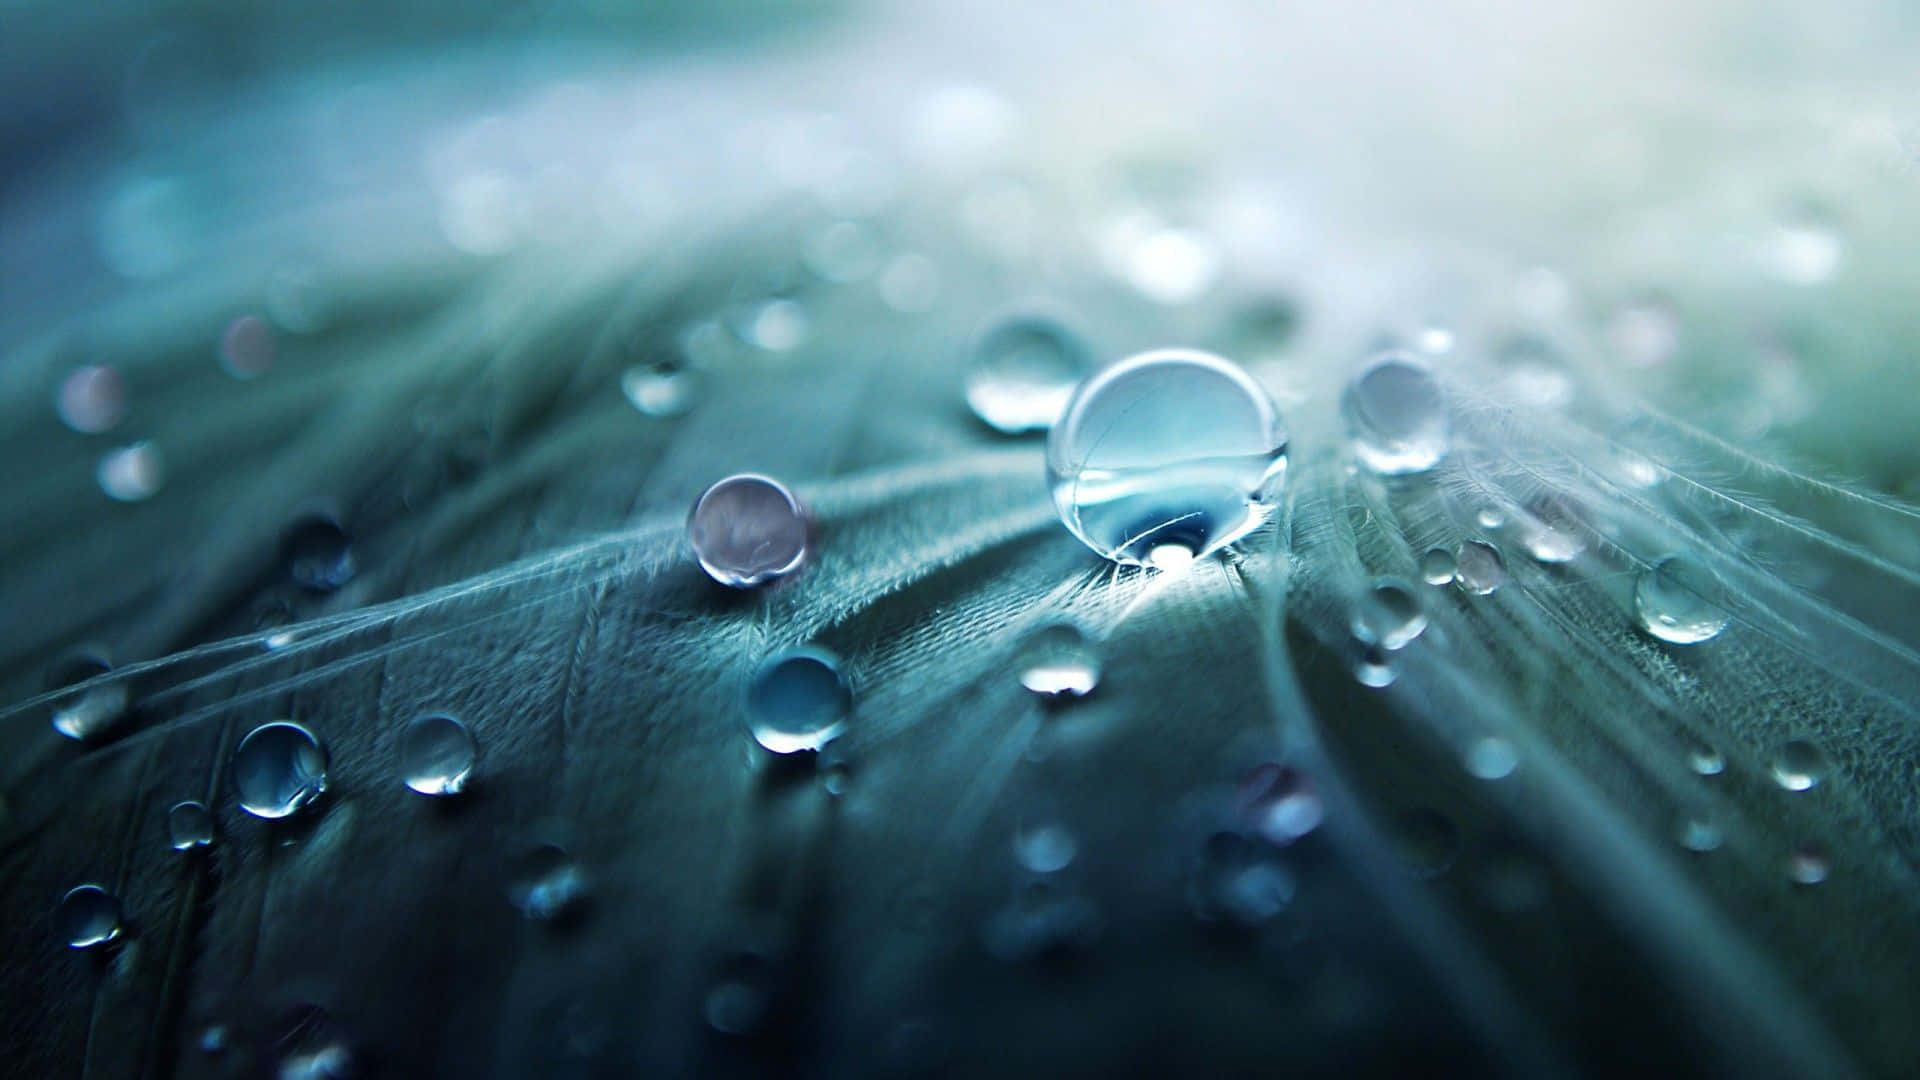 Water Droplets On Leaves Macro Shot 720p